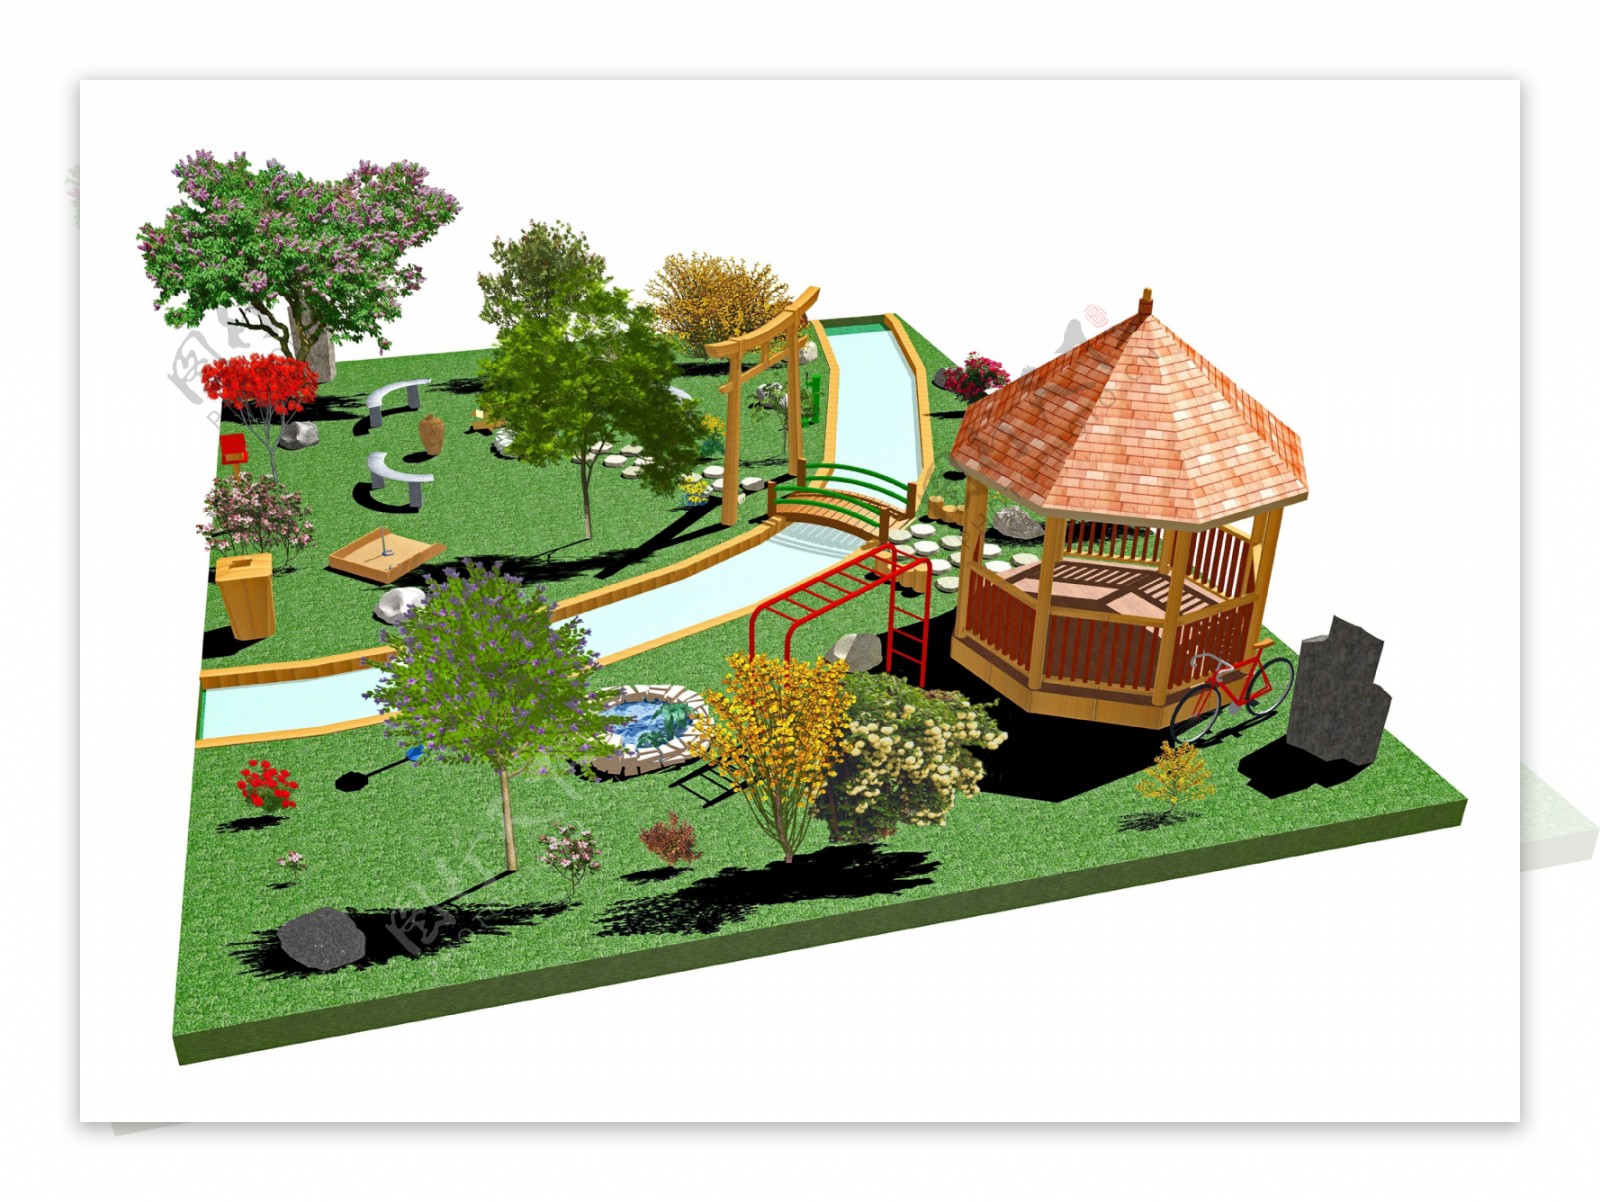 3D公园凉亭模型图片